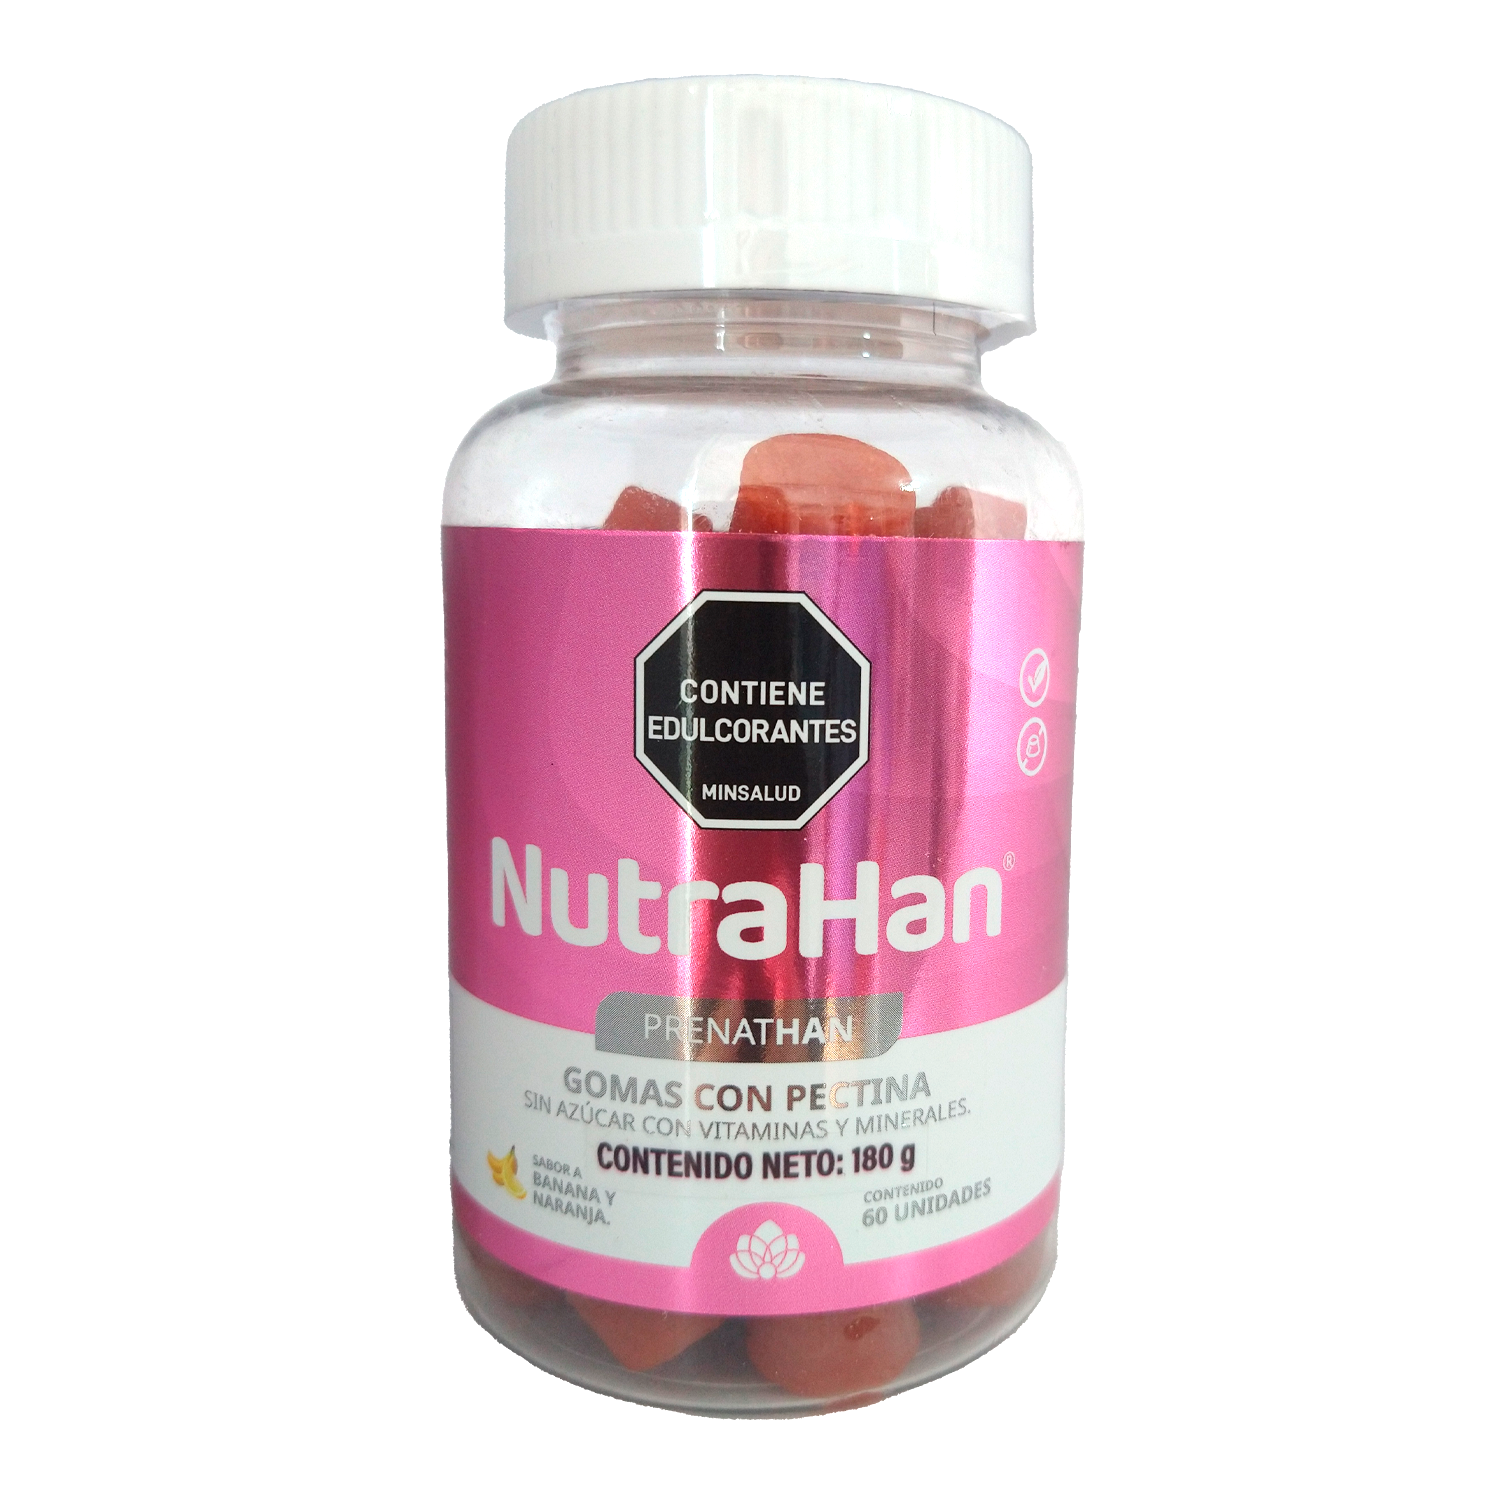 PrenatHan 60 gomas 180 g Nutrahan